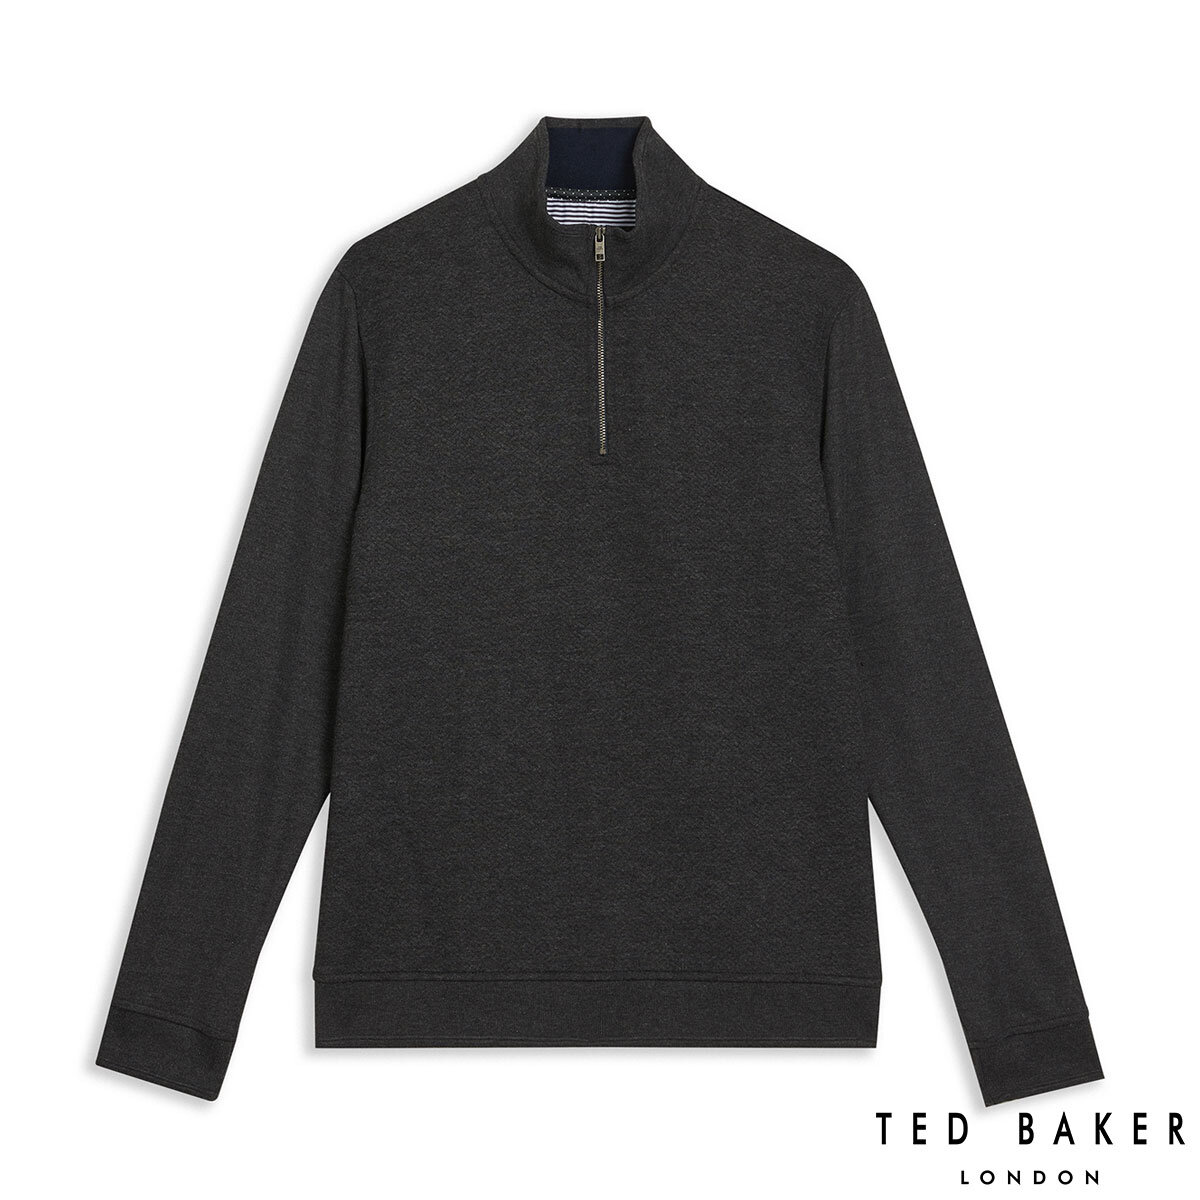 Ted Baker Men's Quarter Zip Sweatshirt in Charcoal, Large